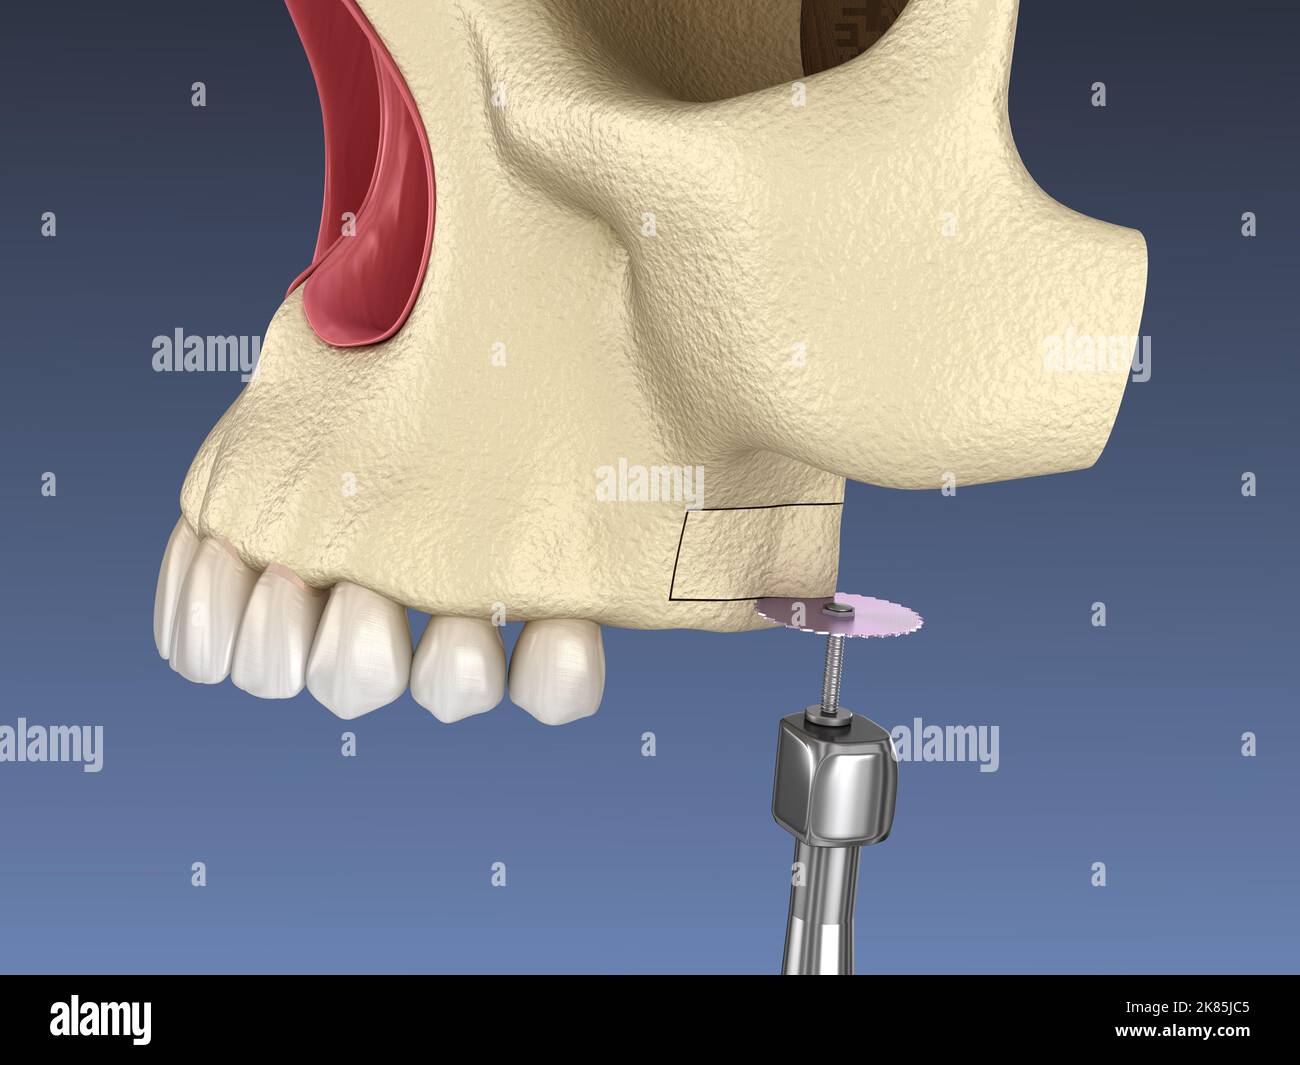 Sinus Lift Surgery - Sinus Augmentation. 3D illustration Stock Photo - Alamy